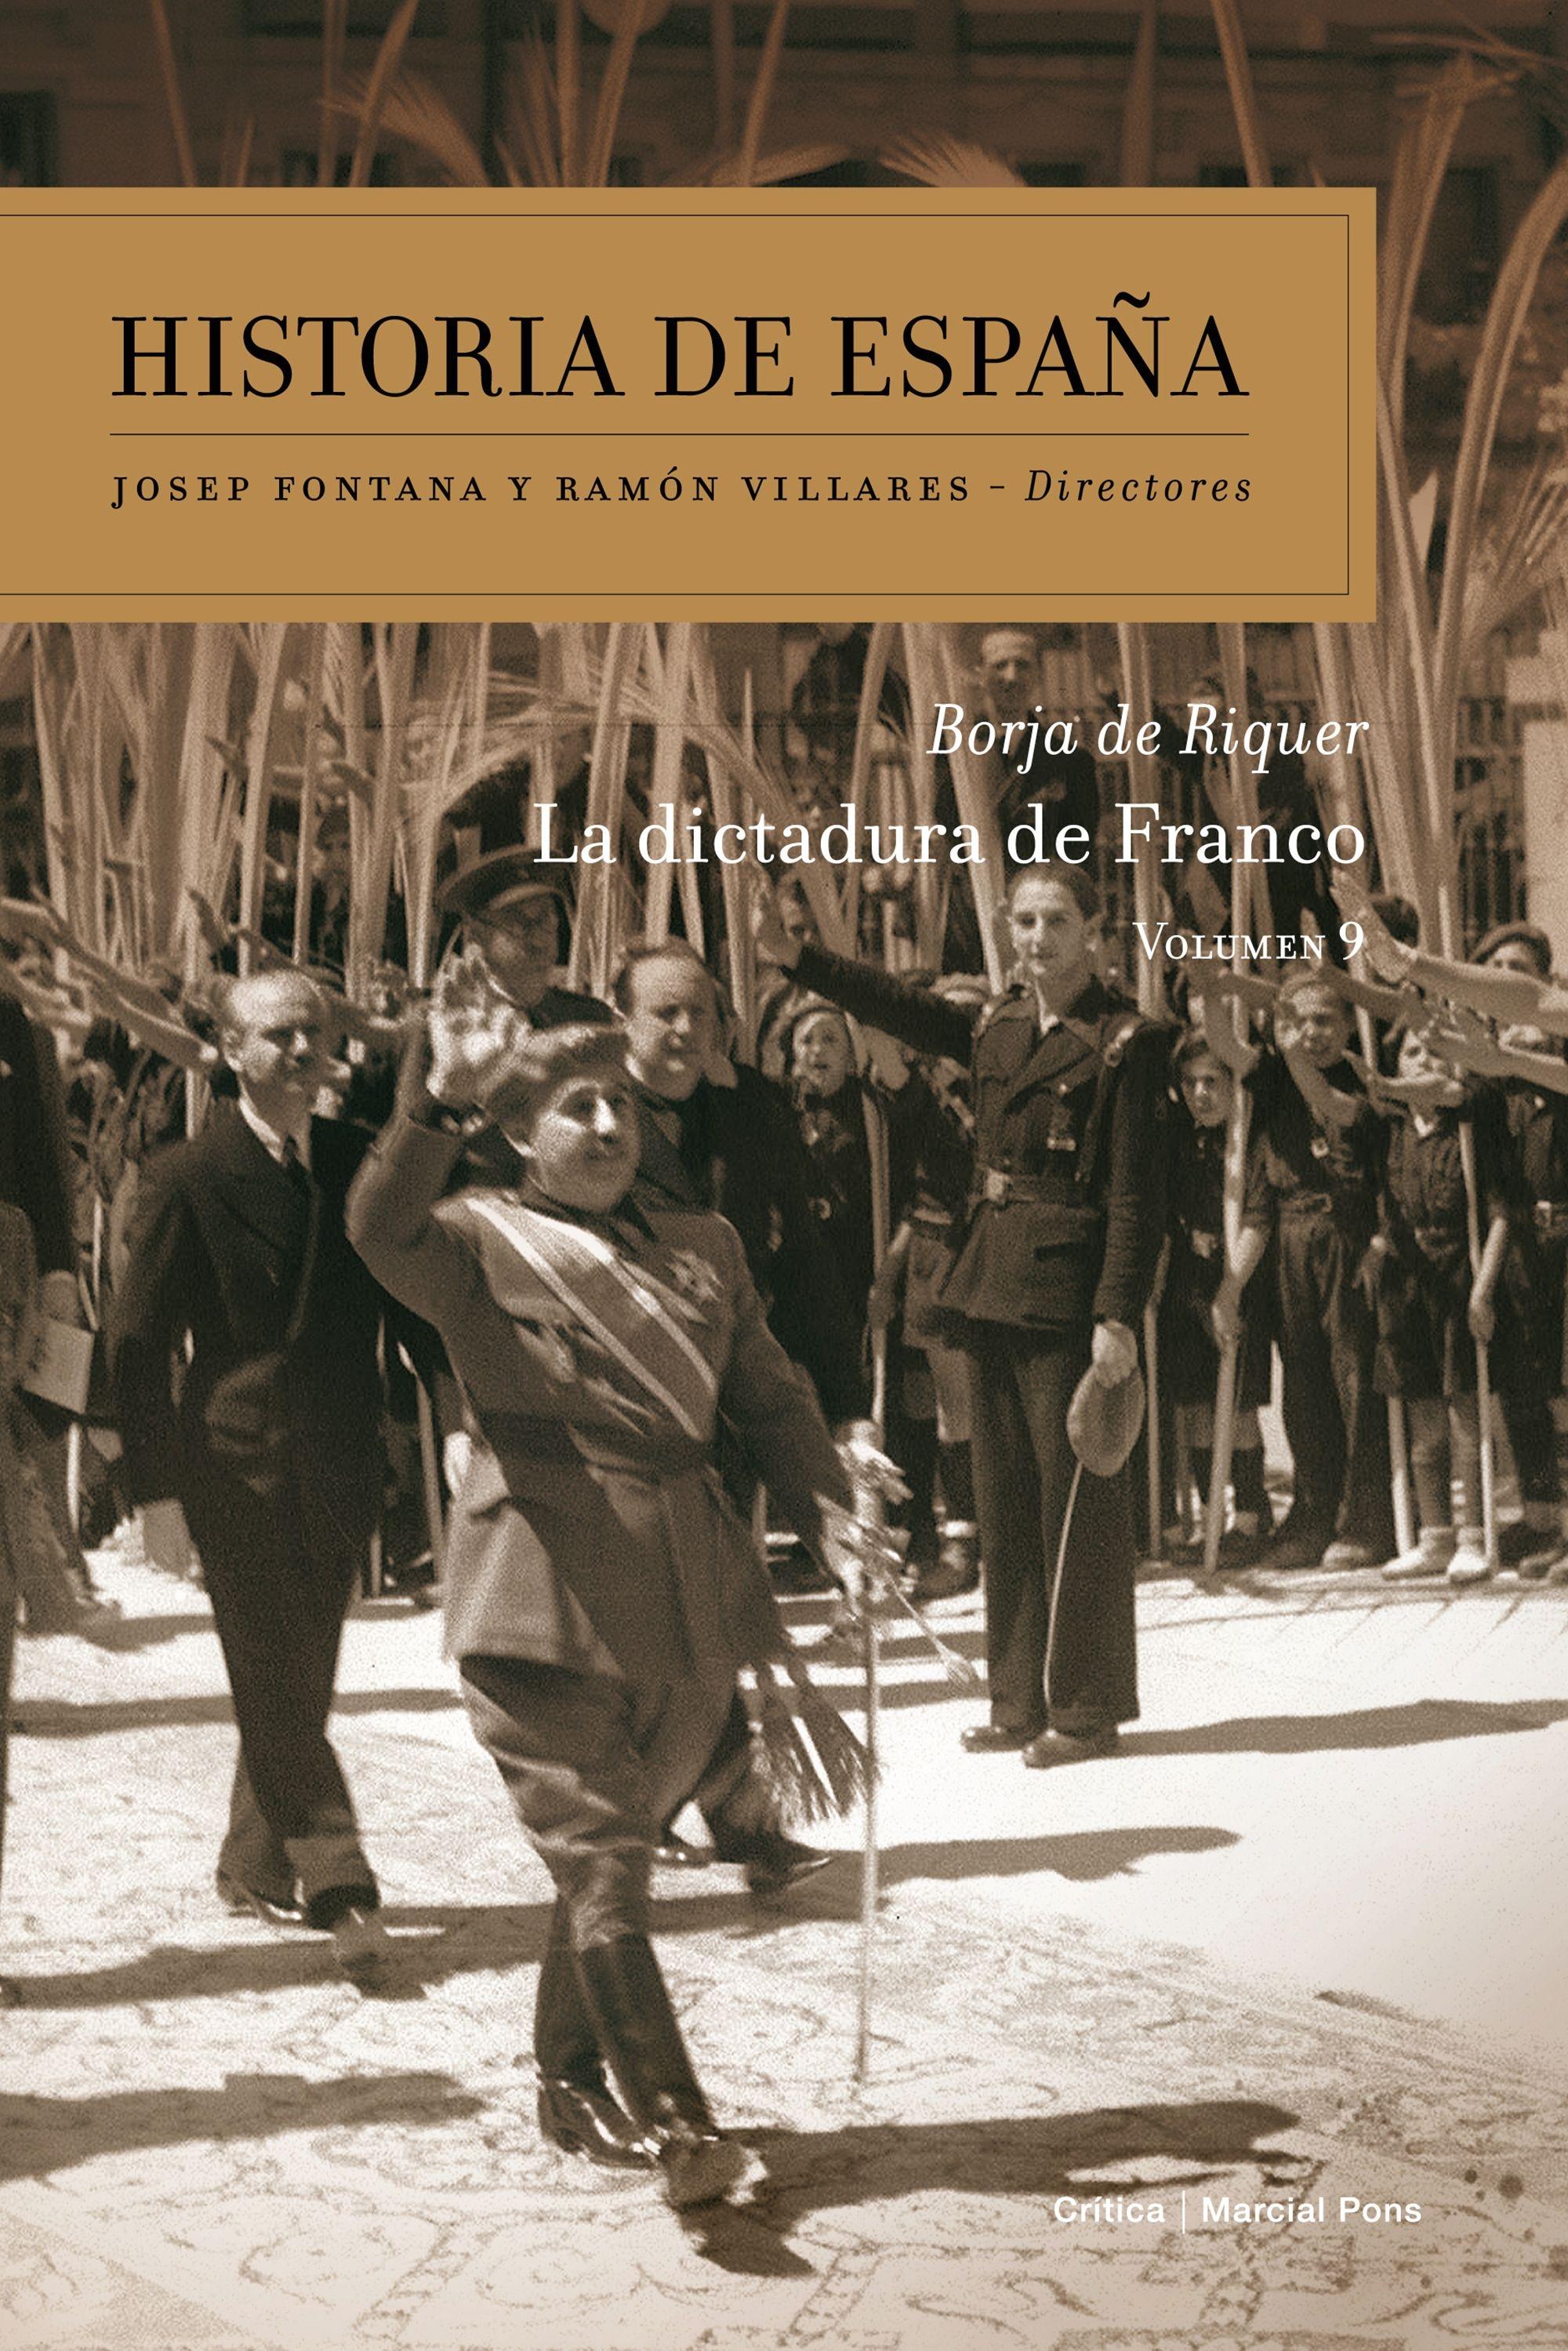 Dictadura de Franco, La "Historia de España. Volumen 9"